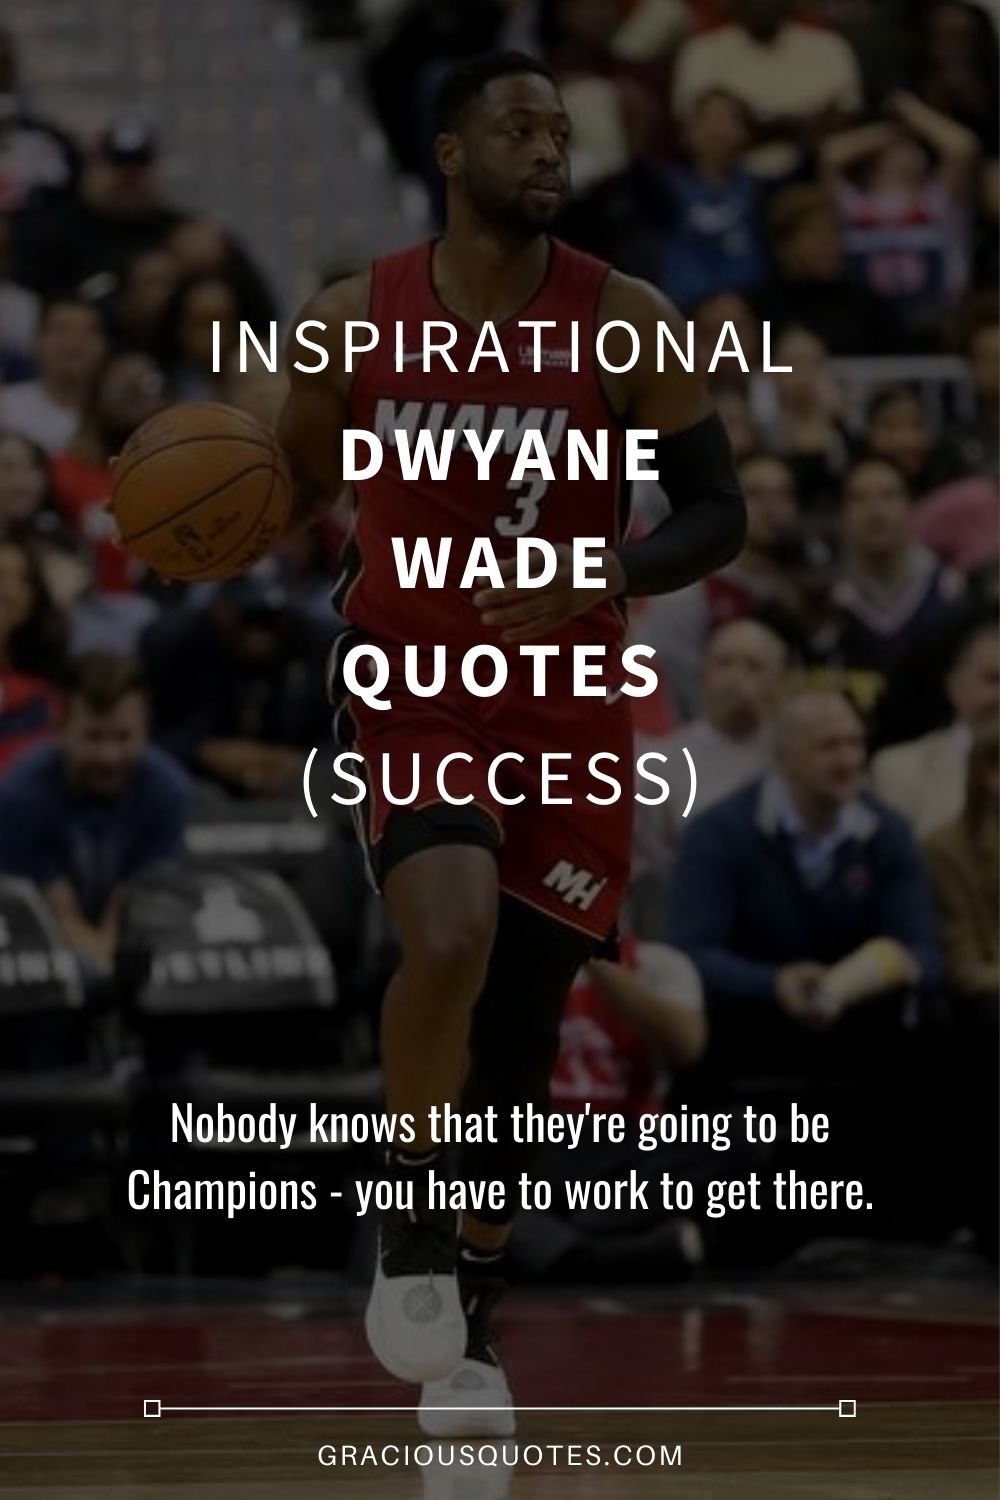 Inspirational Dwyane Wade Quotes (SUCCESS) - Gracious Quotes